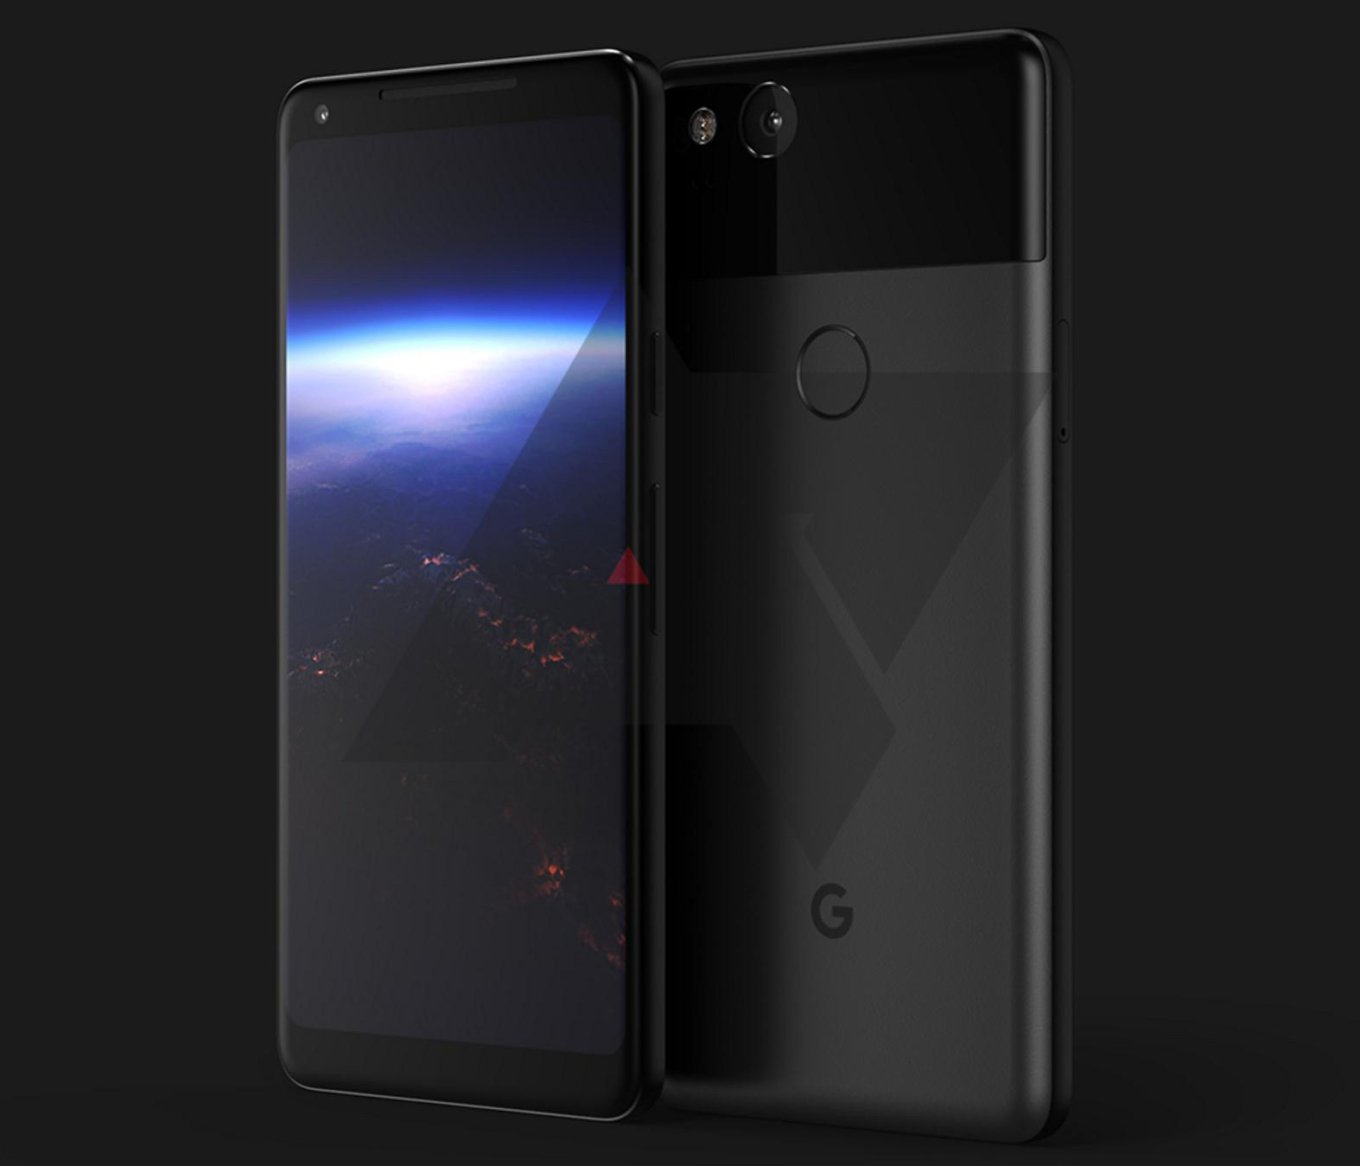 Στις 5 Οκτωβρίου φημολογείται ότι θα παρουσιάσει η Google τα Pixel 2 και Pixel 2 XL